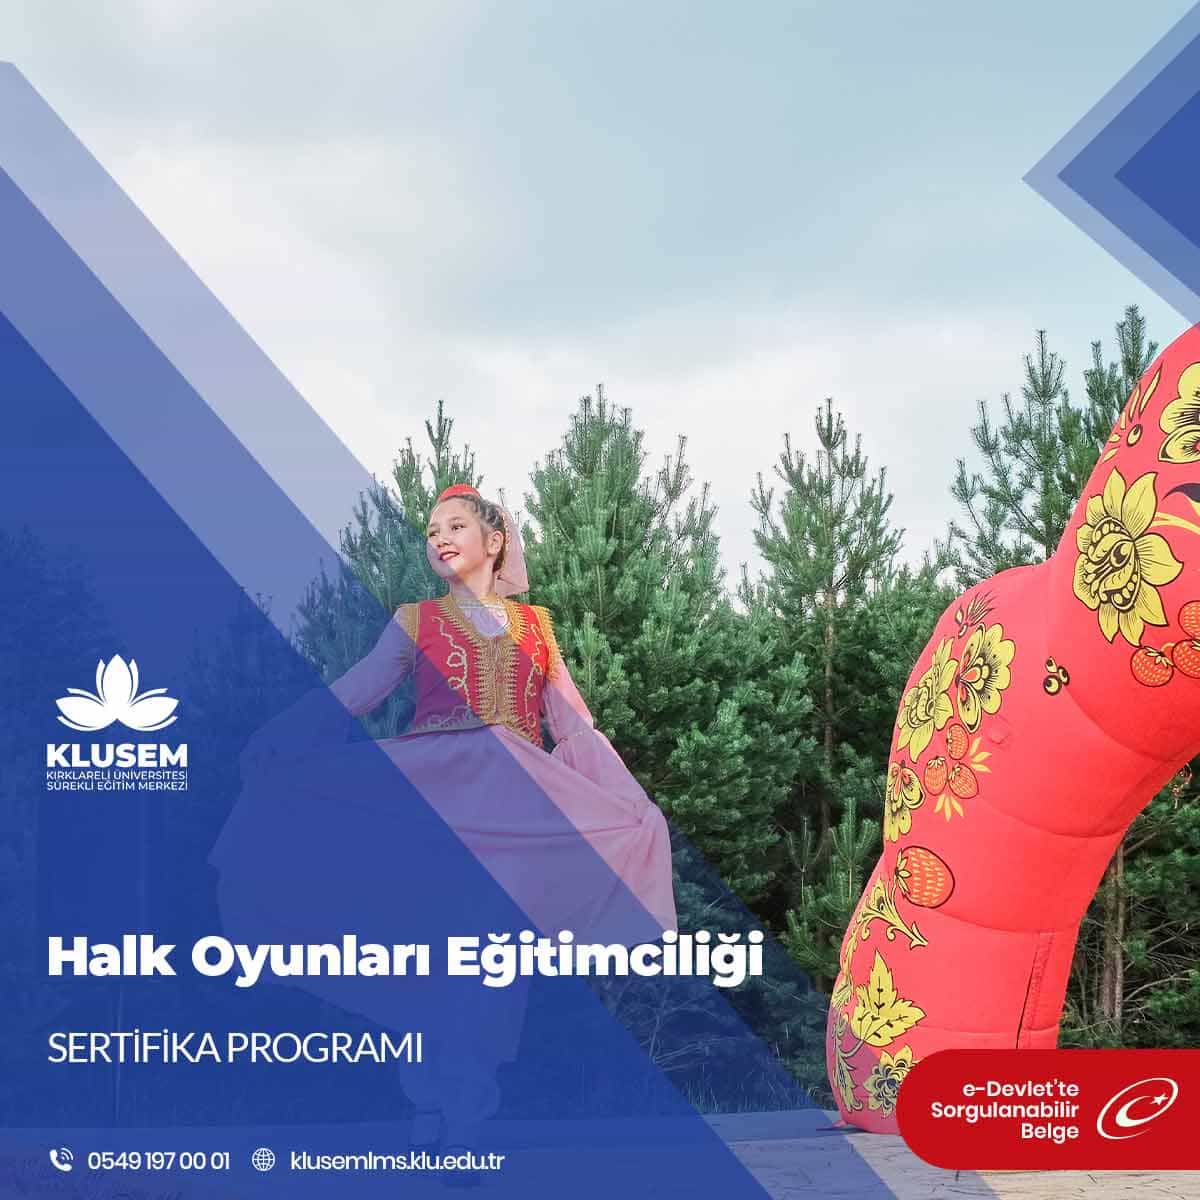 Halk oyunları, bir topluluğun kültürel mirasını yansıtan, geleneksel dans ve müzik öğelerini içeren önemli bir halk kültürü unsuru olarak kabul edilir.